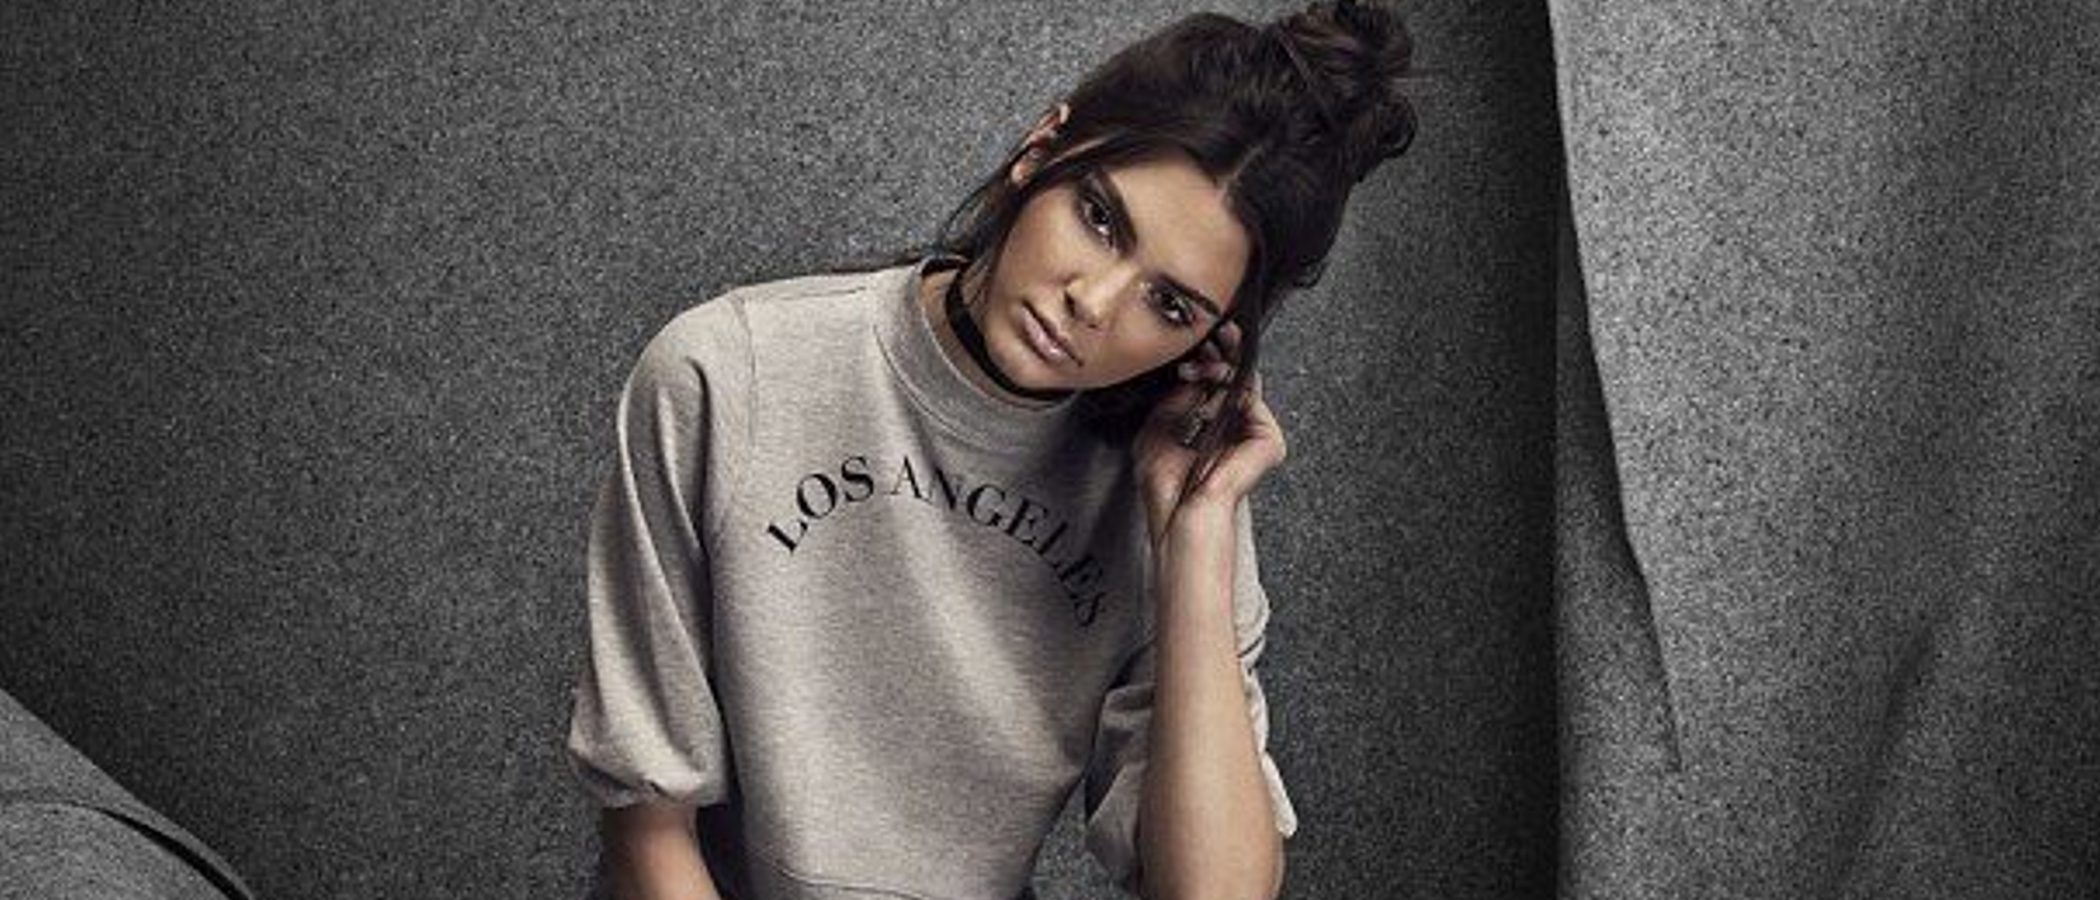 Kendall Jenner, 5 hitos por los que ha llegado a ser una influencer de moda